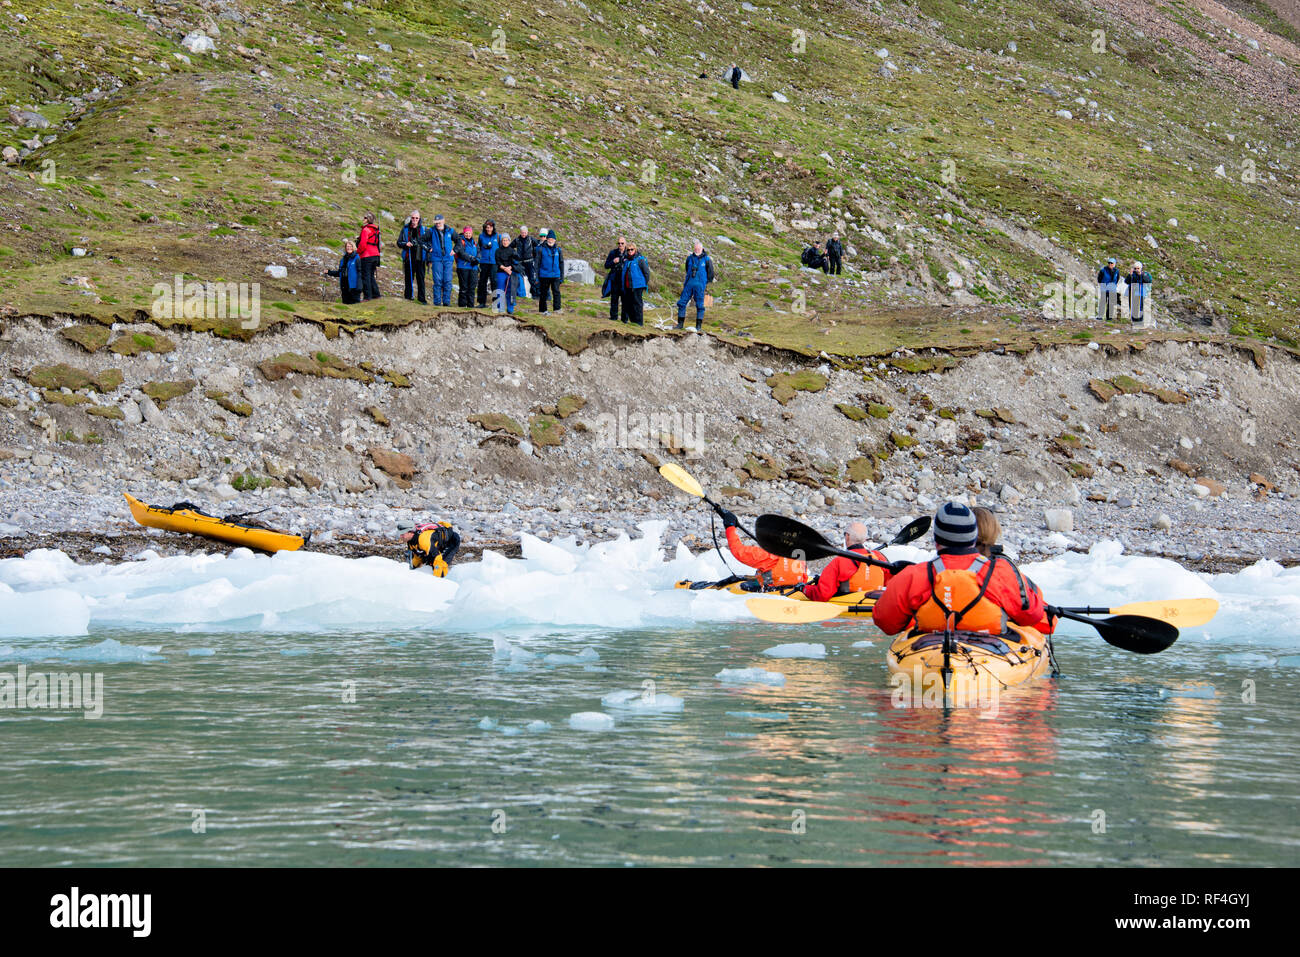 SVALBARD, Norwegen - Kajaktouristen erkunden das eisige Wasser und die unberührten Landschaften der Arktis rund um Svalbard. Diese einzigartige und abenteuerliche Form des Tourismus bietet ein Erlebnis aus nächster Nähe mit der arktischen Umgebung und zeigt die atemberaubende Schönheit und empfindliche Ökosysteme der Region. Stockfoto